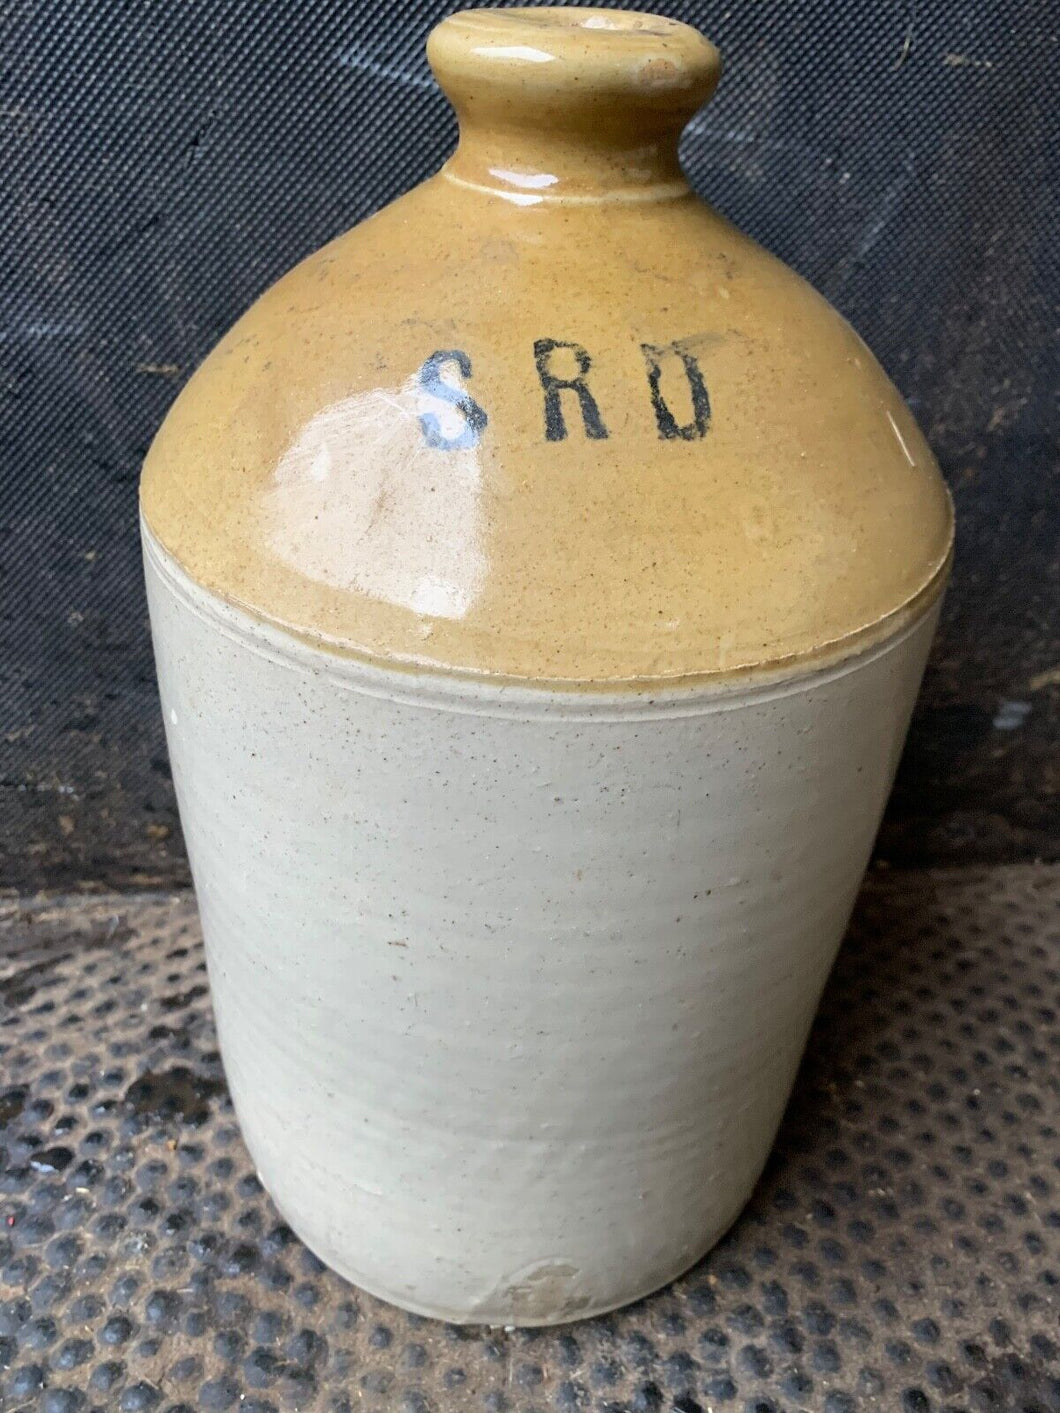 Original WW1 SRD Jar Rum Jar - British Army Issue - 